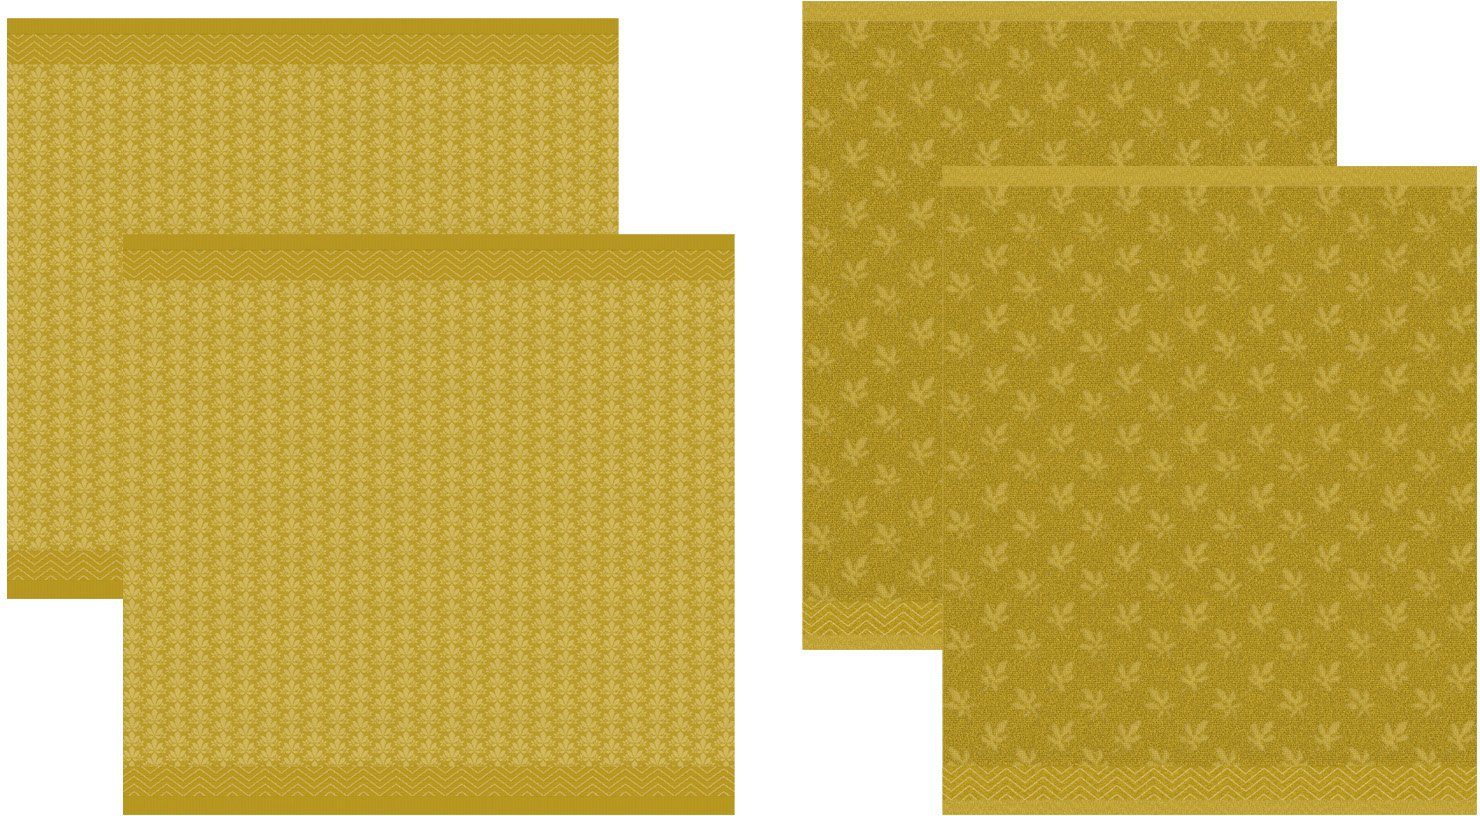 Küchentuch aus 2x 2x gelb/ocker (Set, Geschirrtuch Geschirrtuch) DDDDD bestehend Combi-Set: Petals, 4-tlg., +